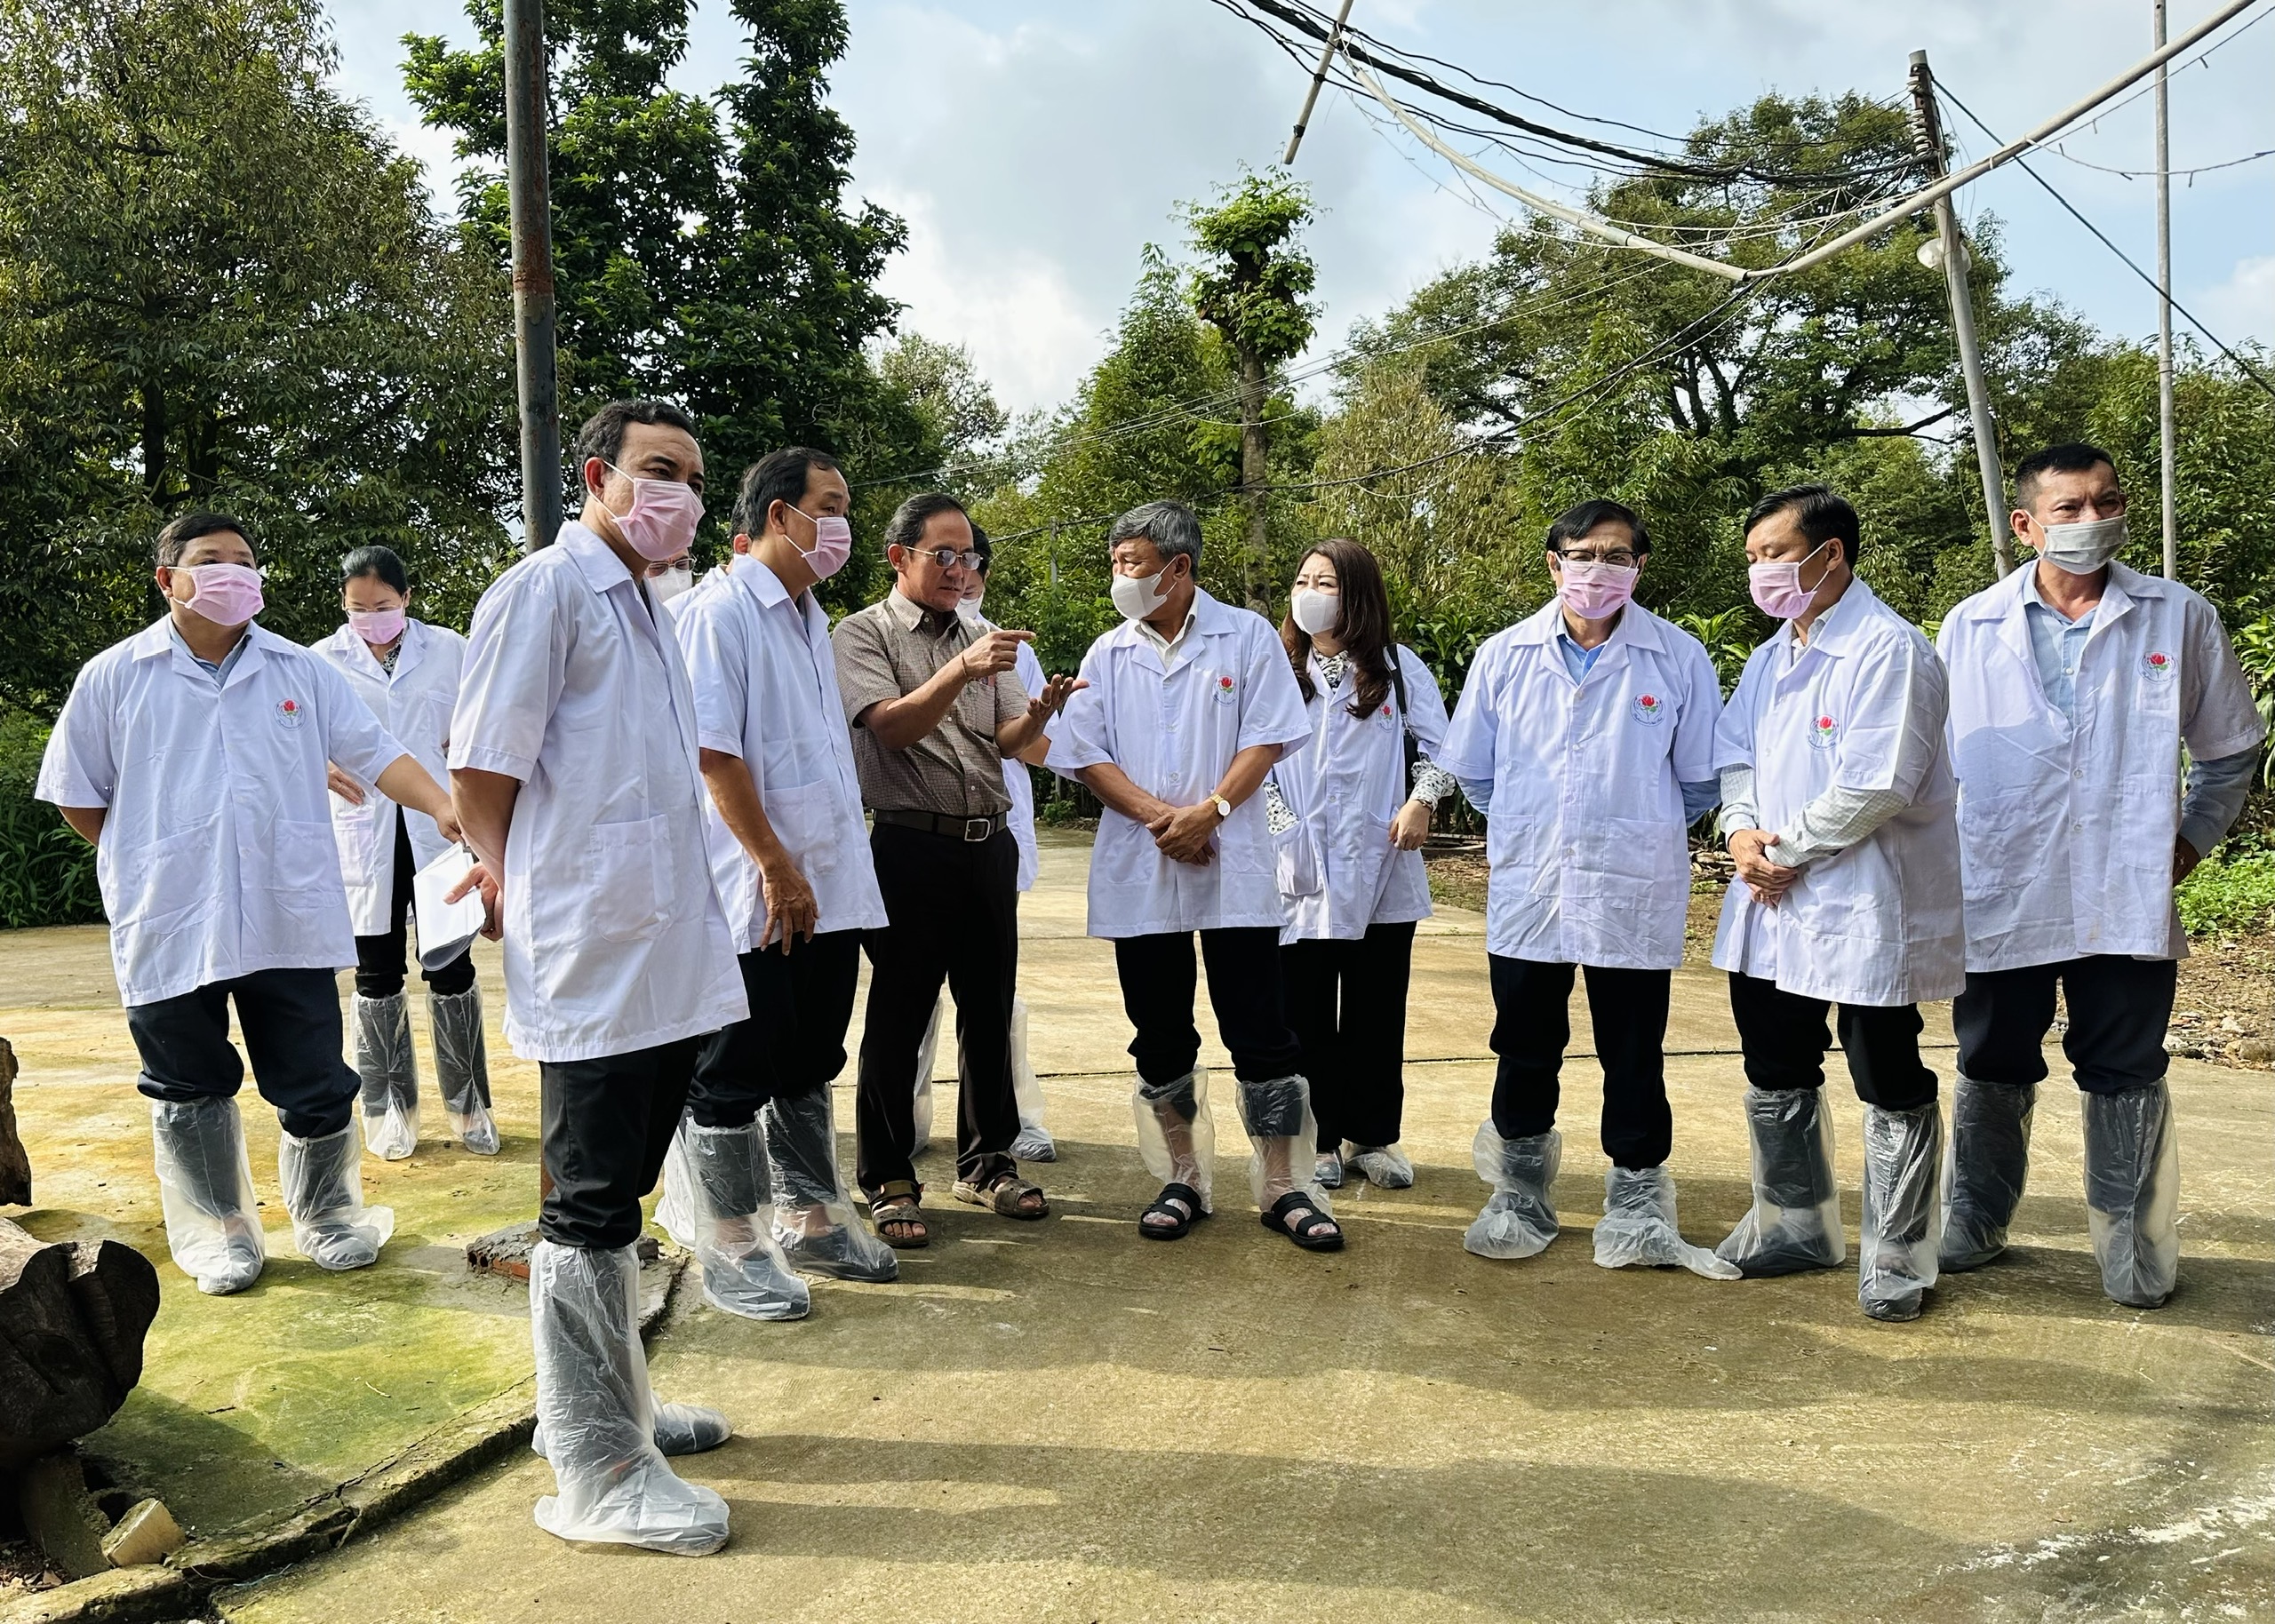 Đồng chí Hồ Thanh Sơn, Phó Bí thư Thường trực Tỉnh ủy kiểm tra việc chấp hành pháp luật về bảo vệ môi trường đối với các cơ sở chăn nuôi tại thành phố Long Khánh